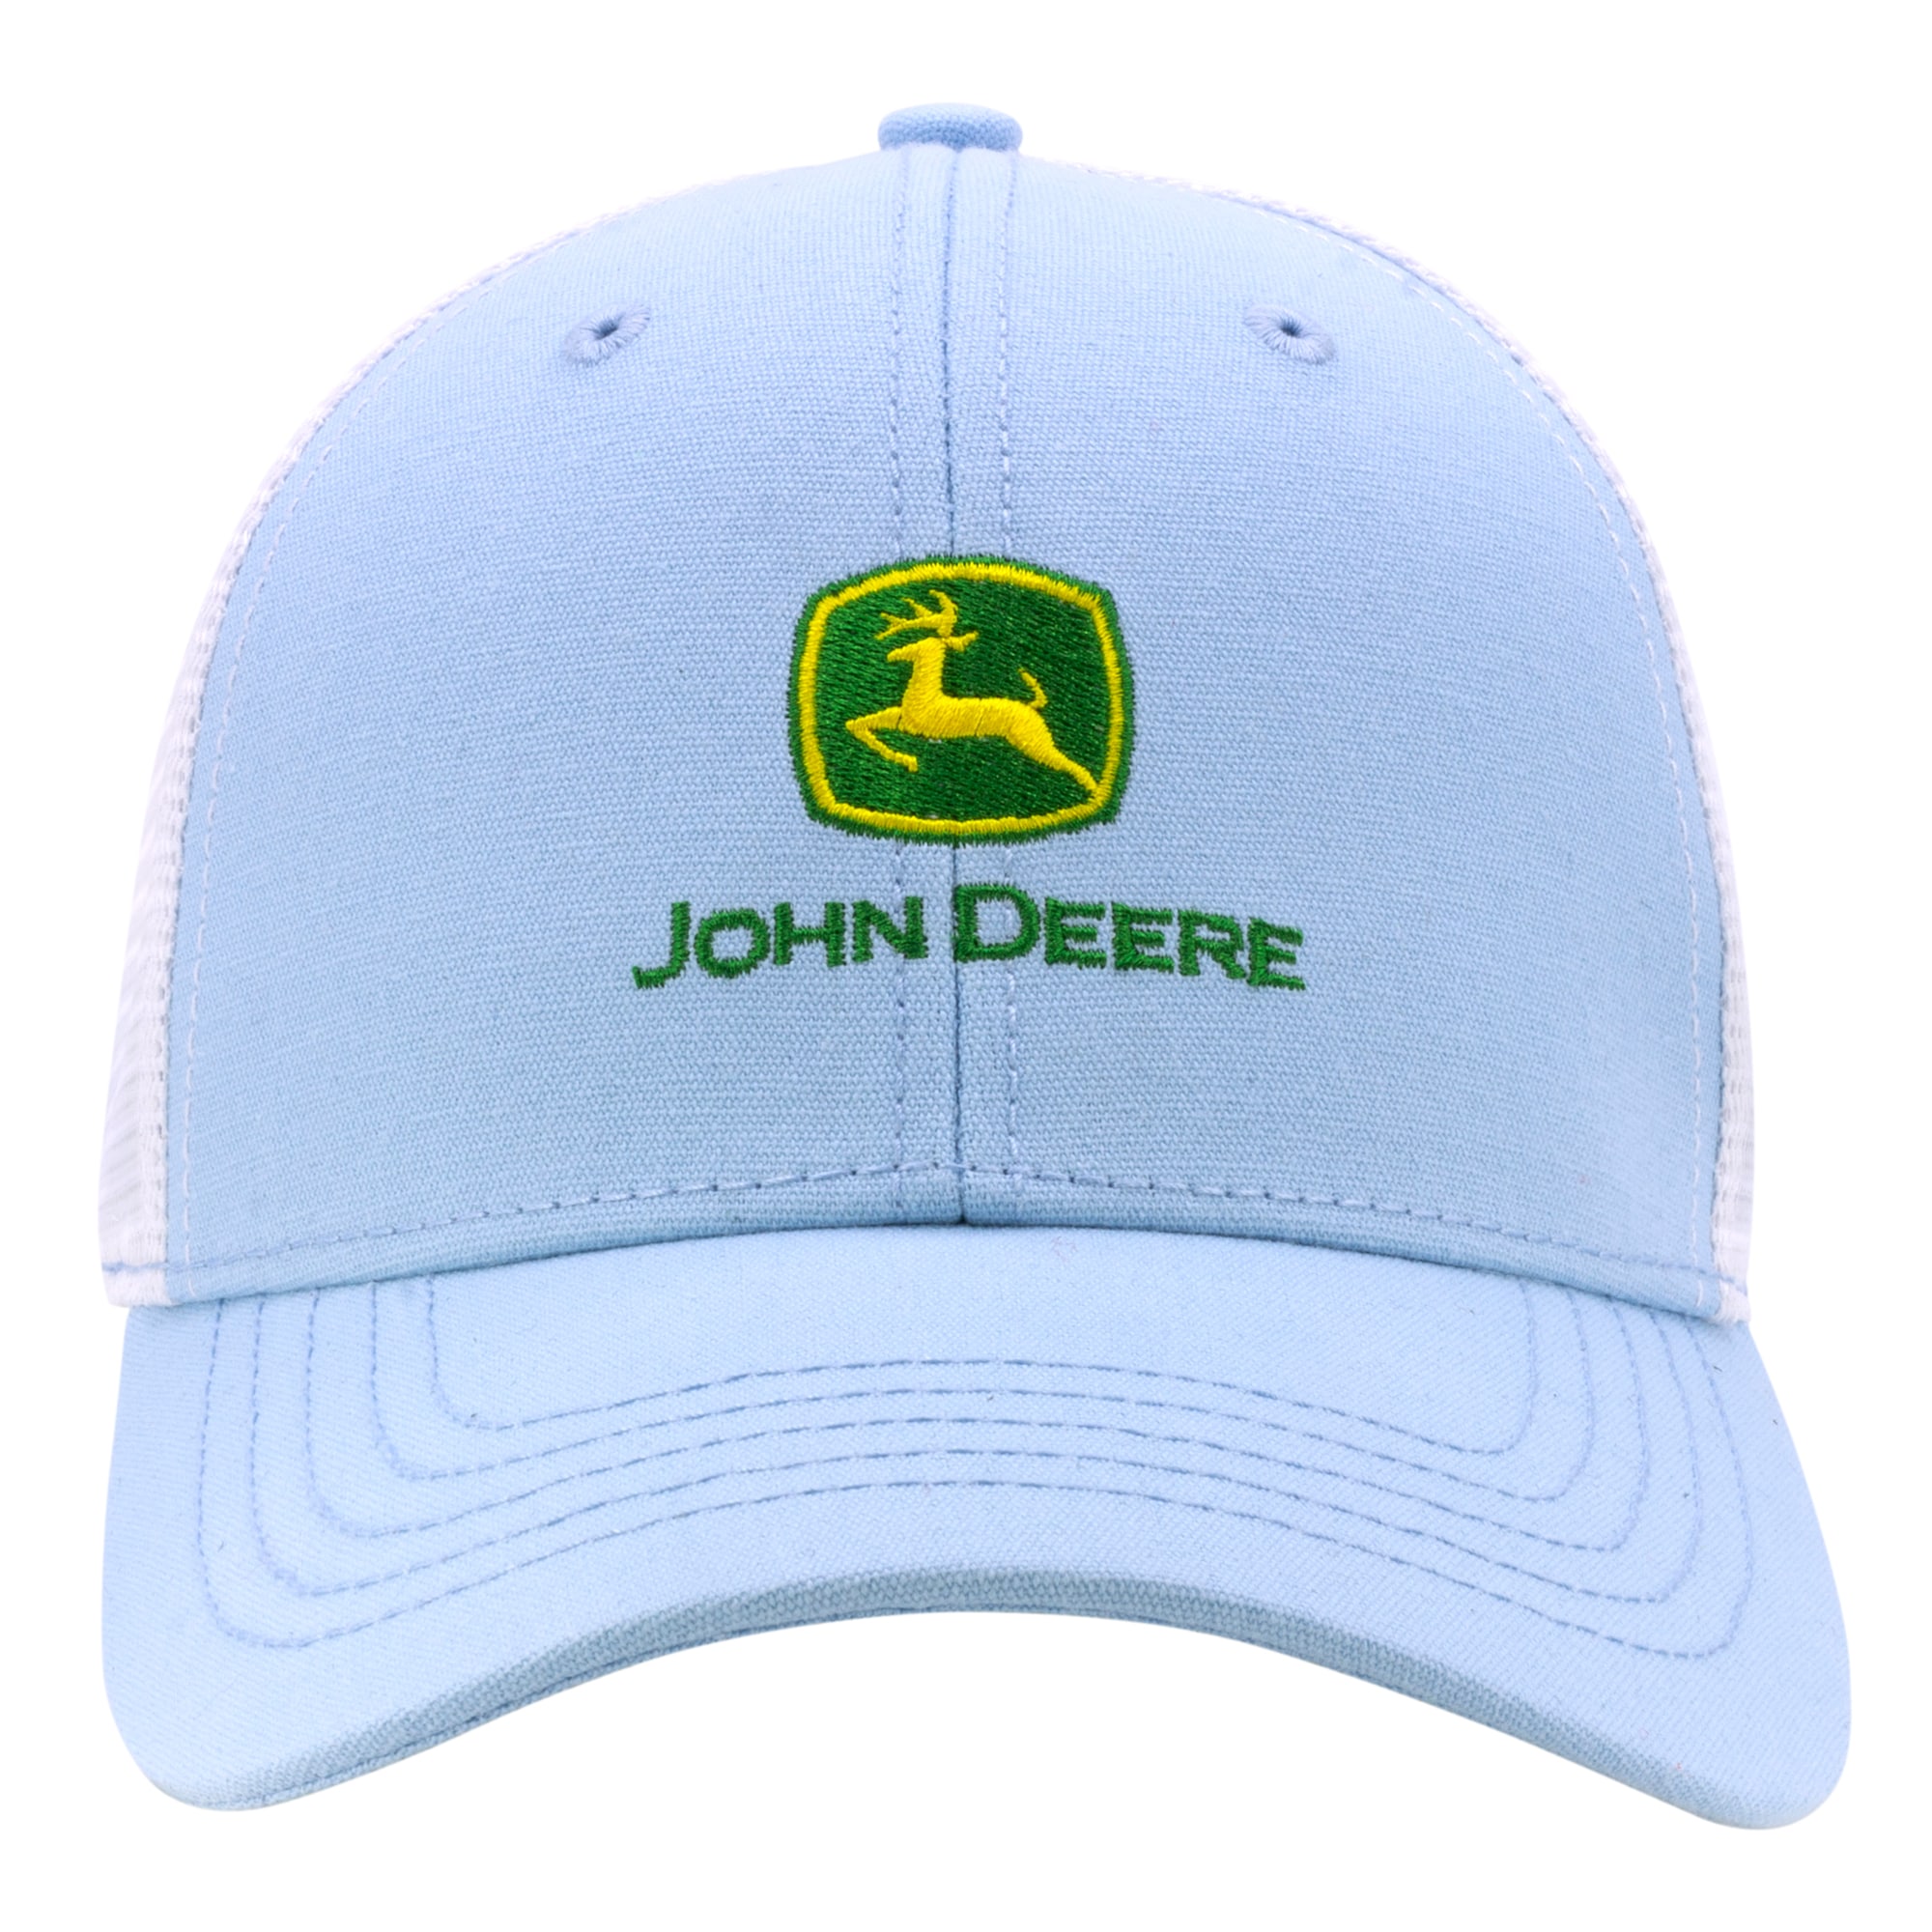 Trademark Cap John Deere